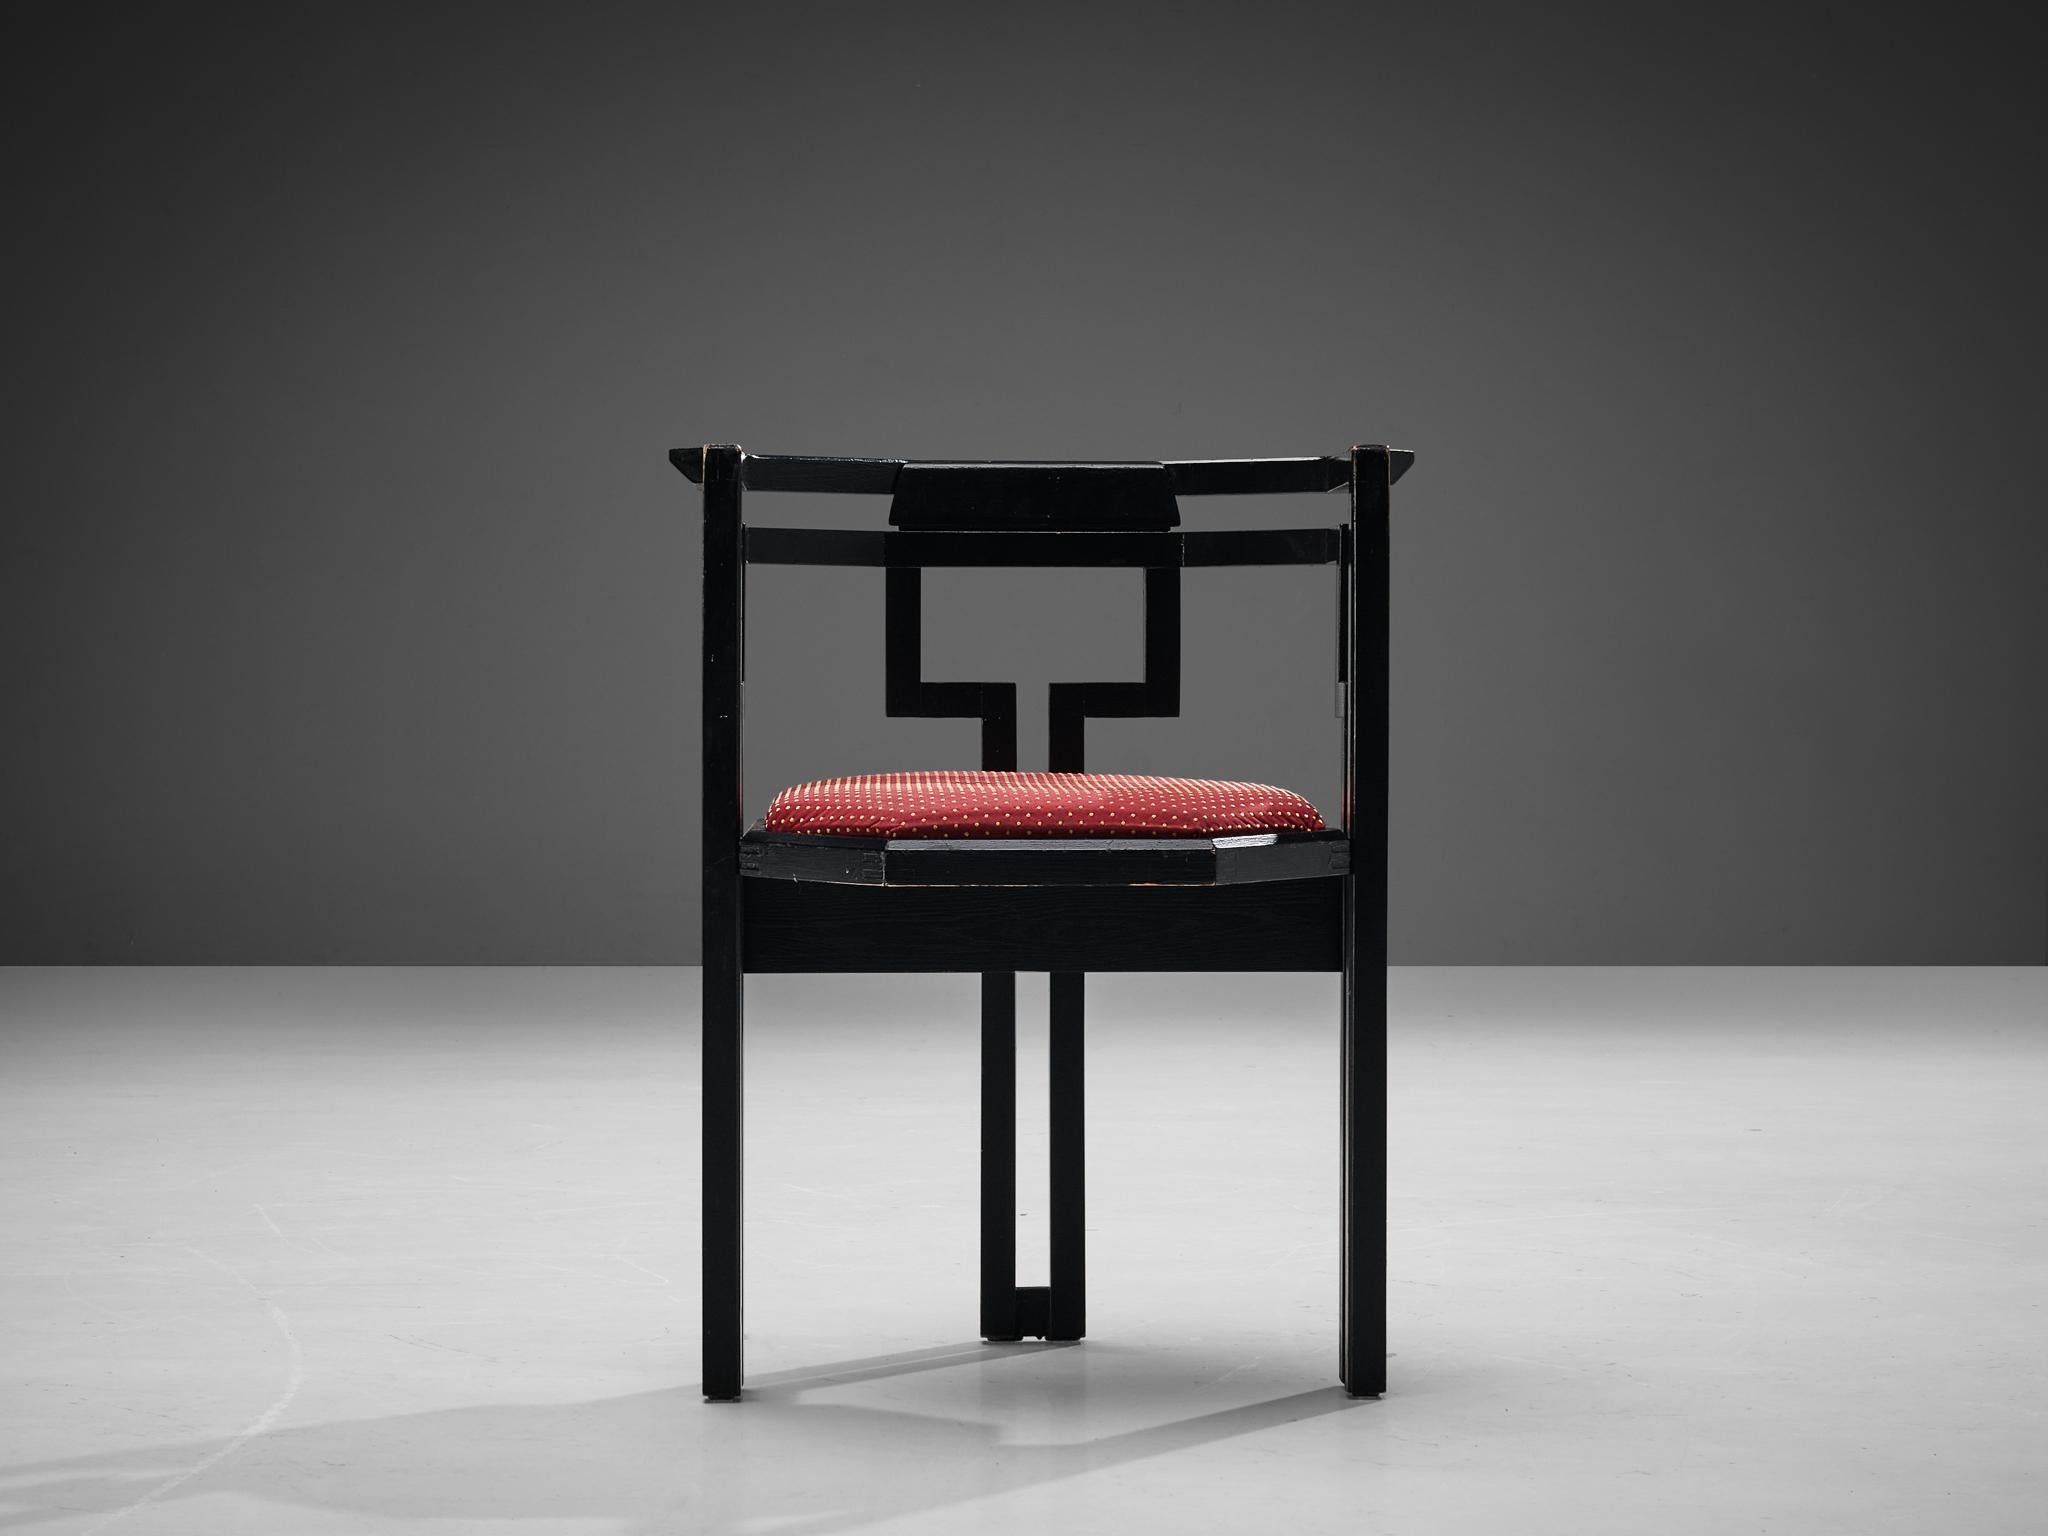 Chaise de salle à manger, chêne laqué noir, tissu blanc, Italie, années 1970.

Magnifique chaise de salle à manger géométrique italienne. Cette chaise allie un design sculptural simple, mais très fort dans ses lignes et ses proportions, à une